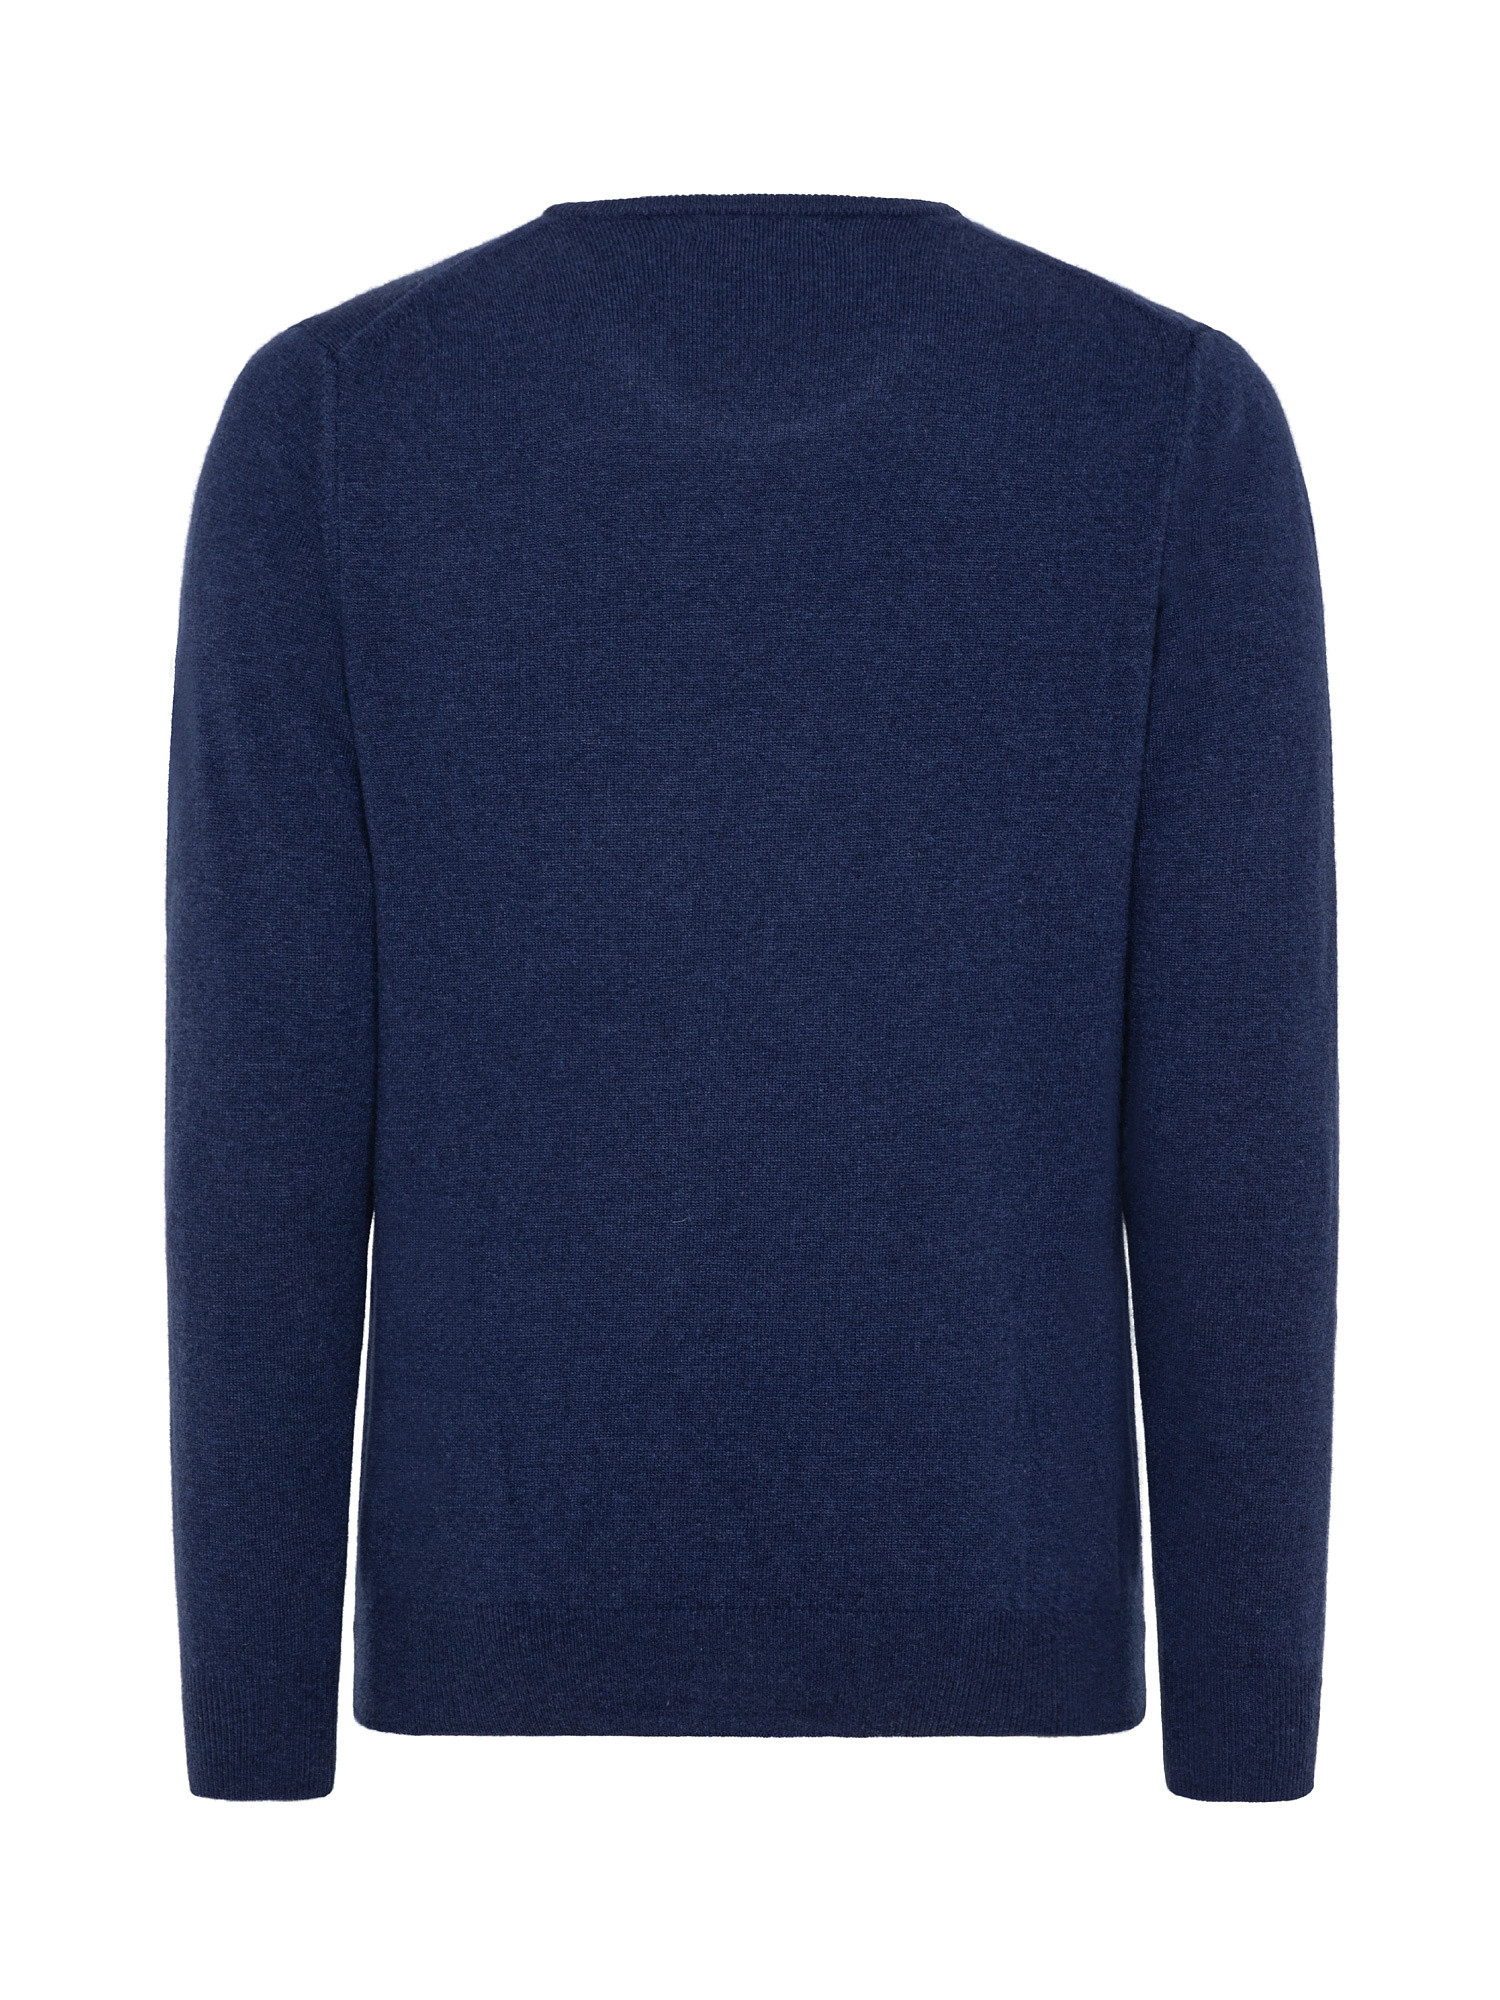 Basic cashmere blend pullover, Blue, large image number 1